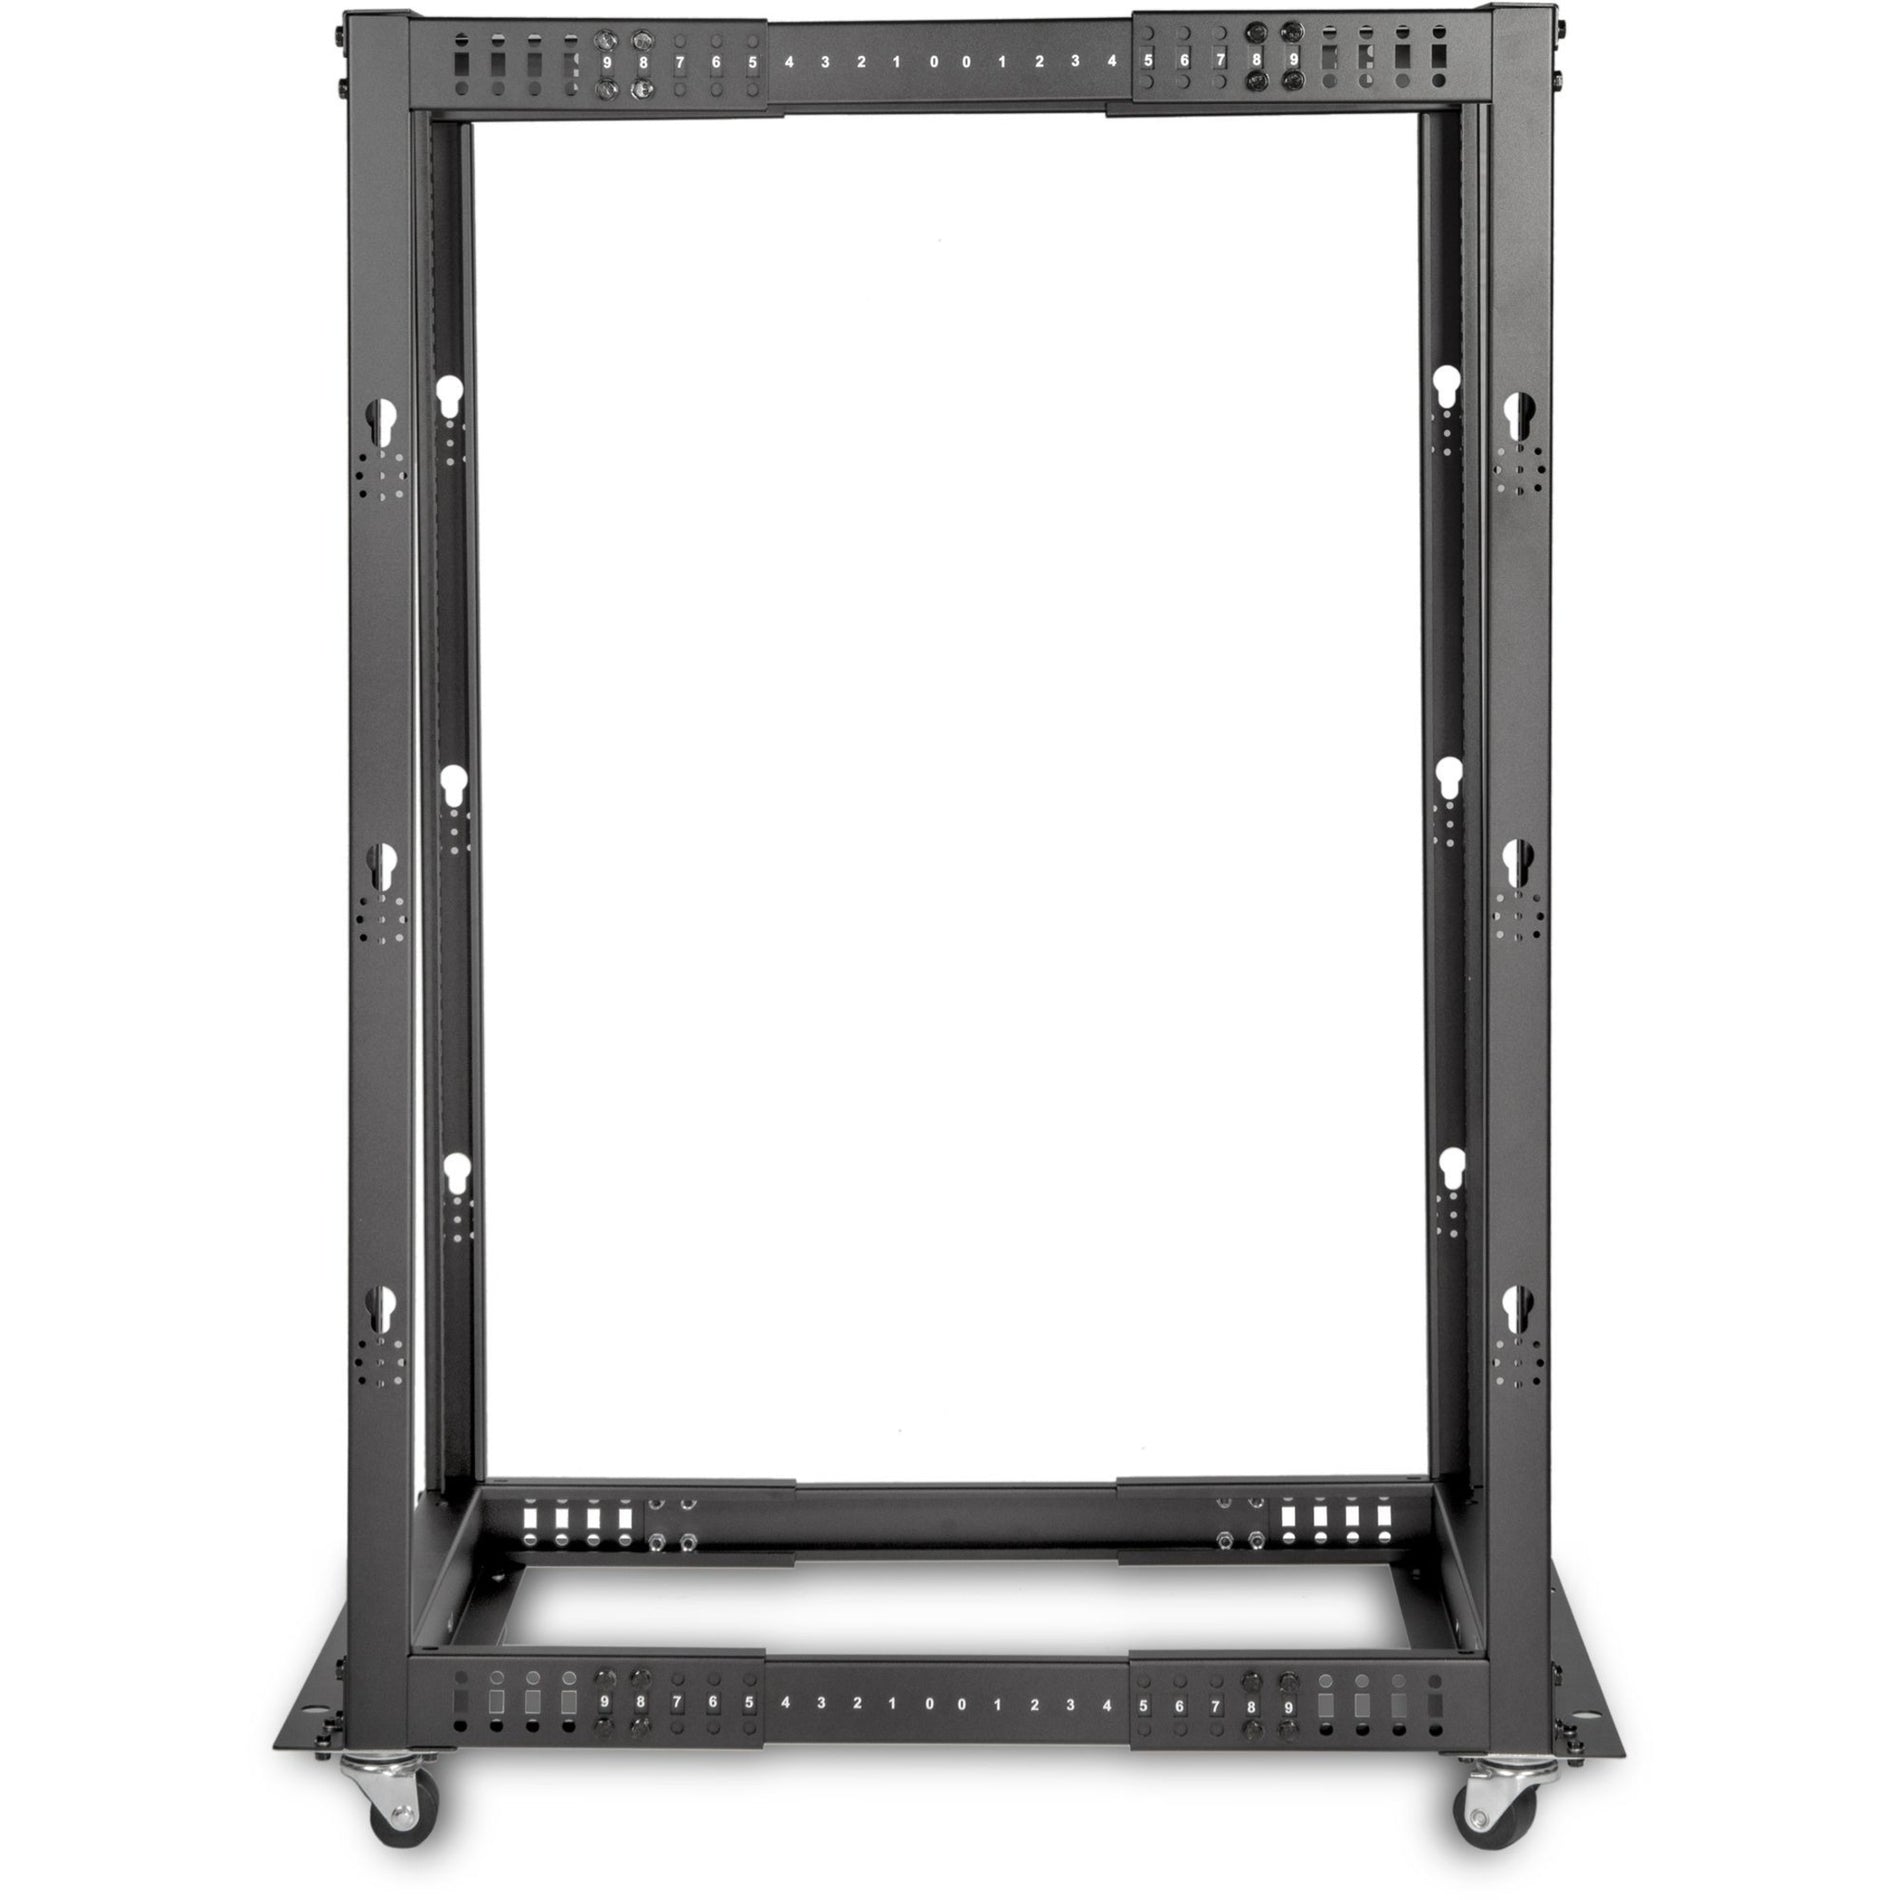 Rocstor Y10E009-B1 SolidRack Rack Frame 25U Open Frame Adjustable Depth Black